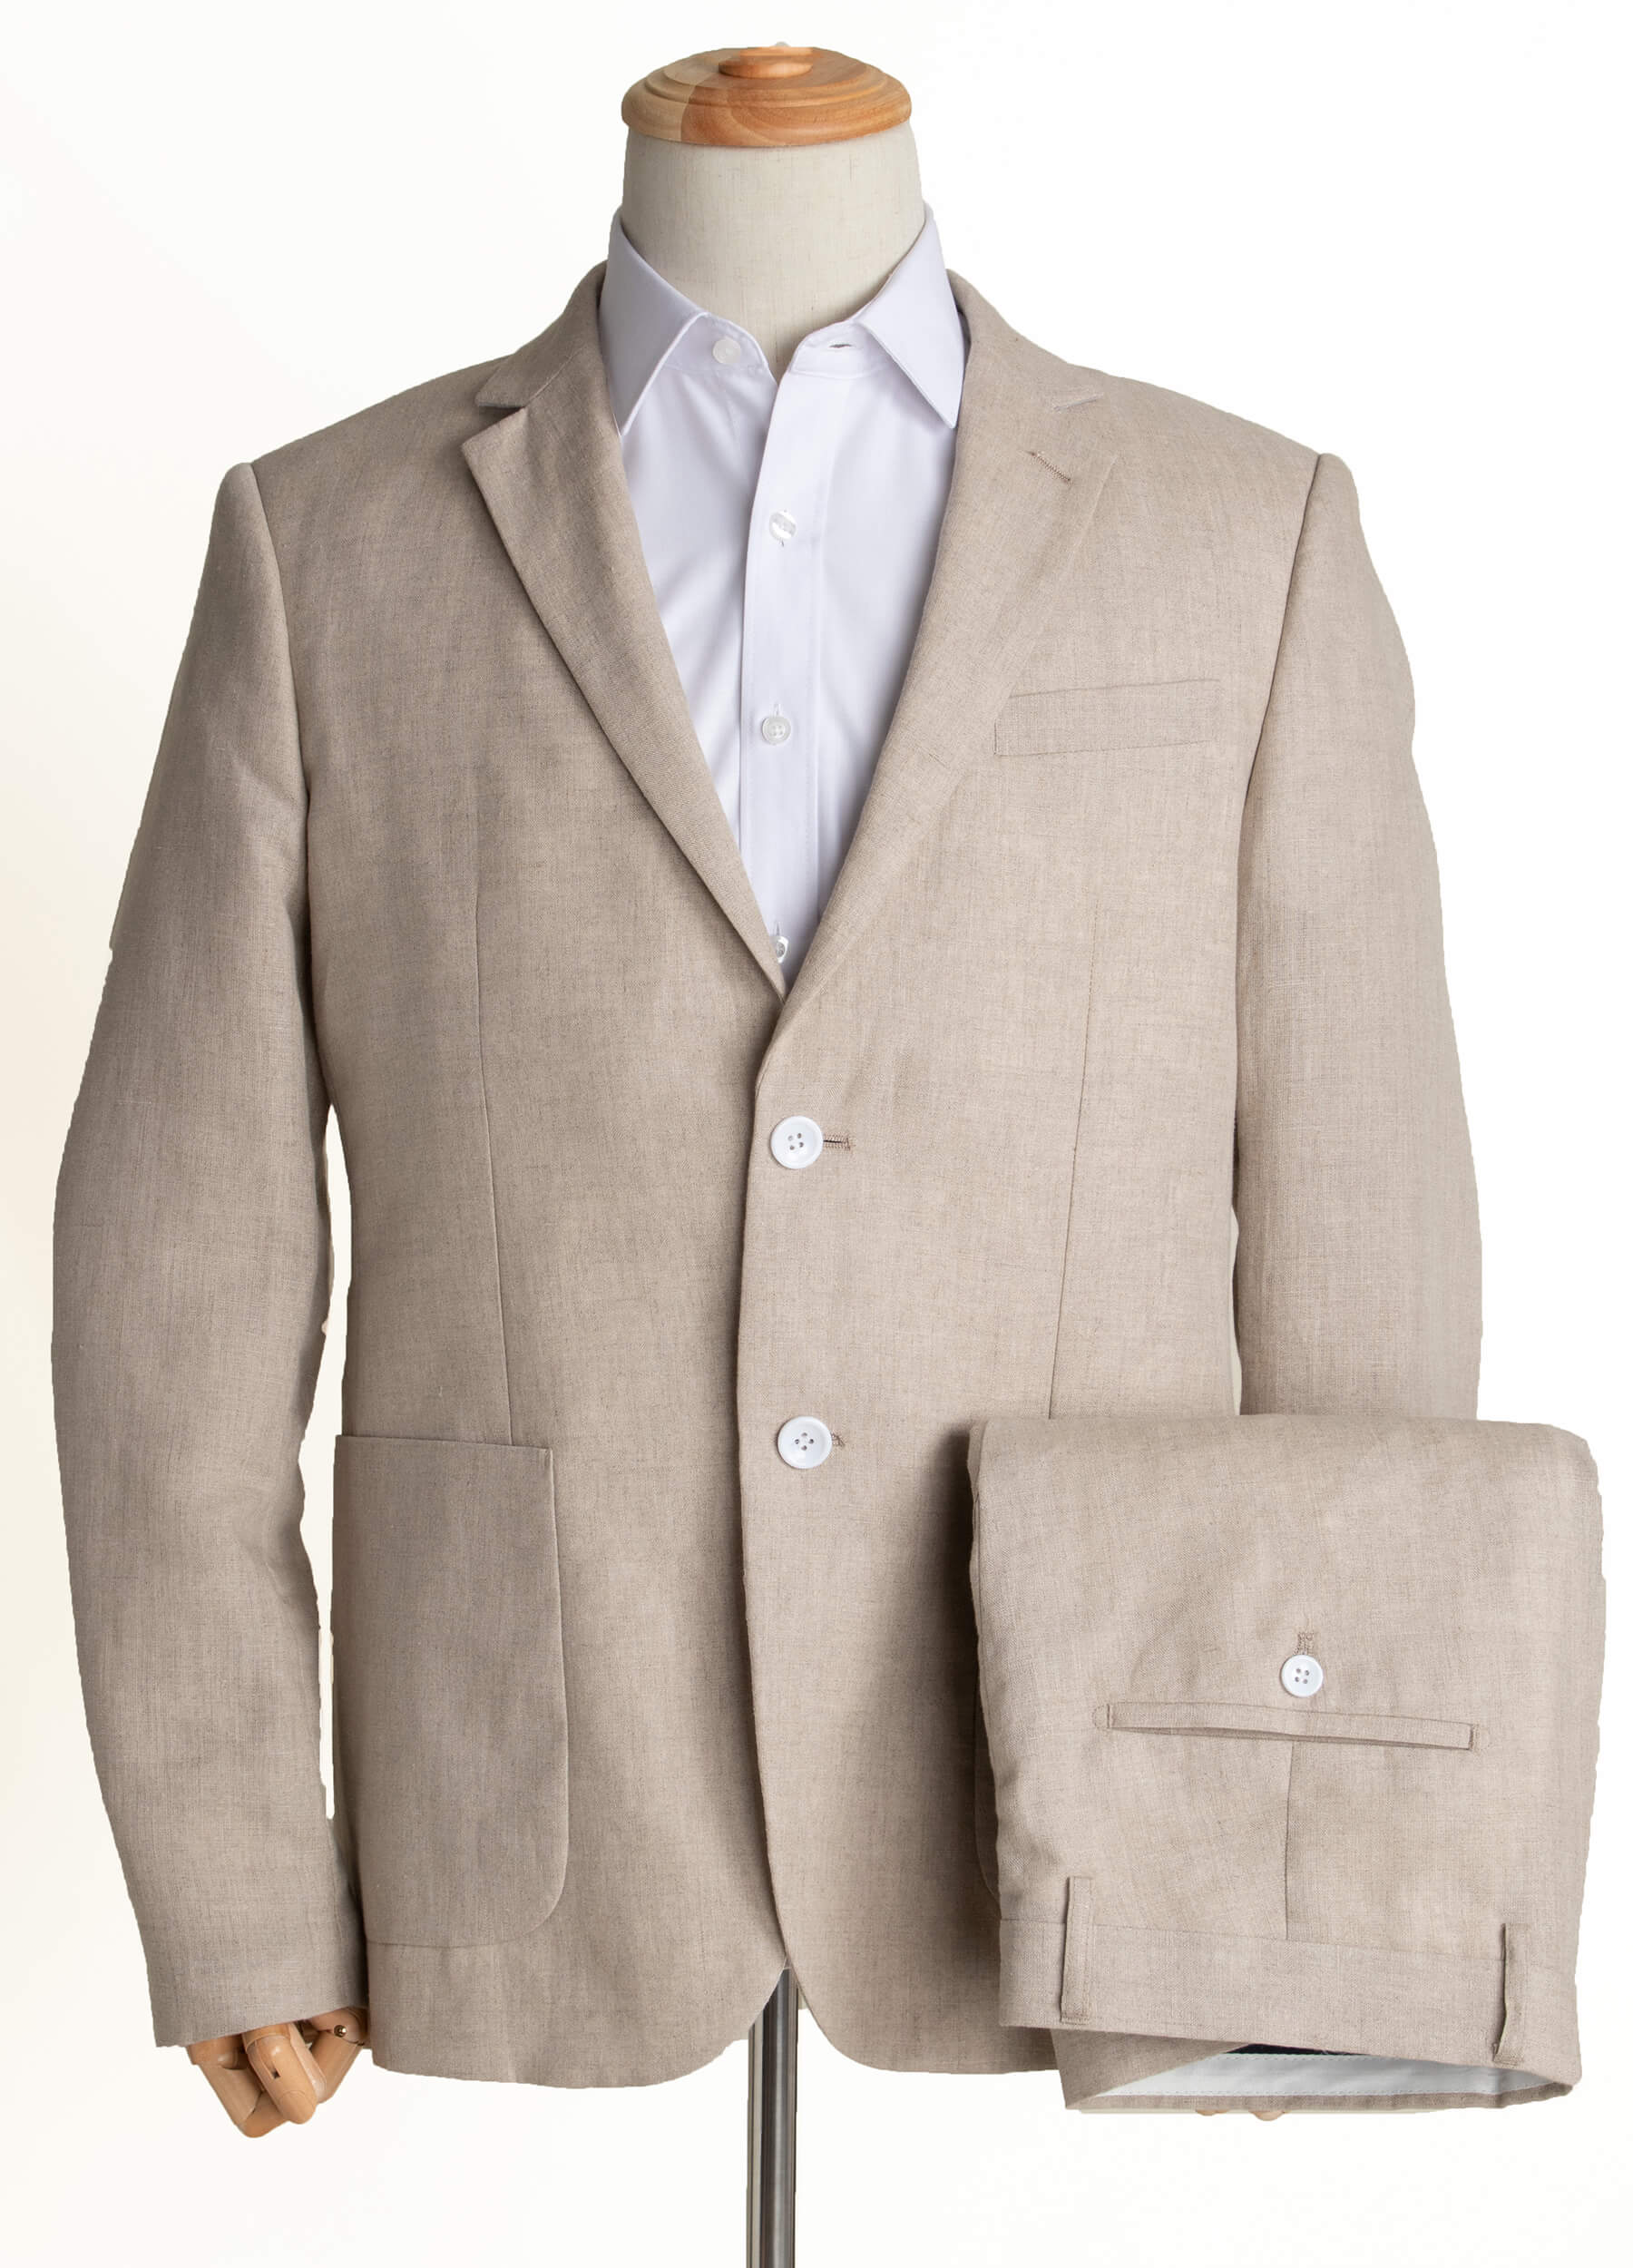 1PA1 Men's Linen Blend Suit Jacket Two Button Business Wedding